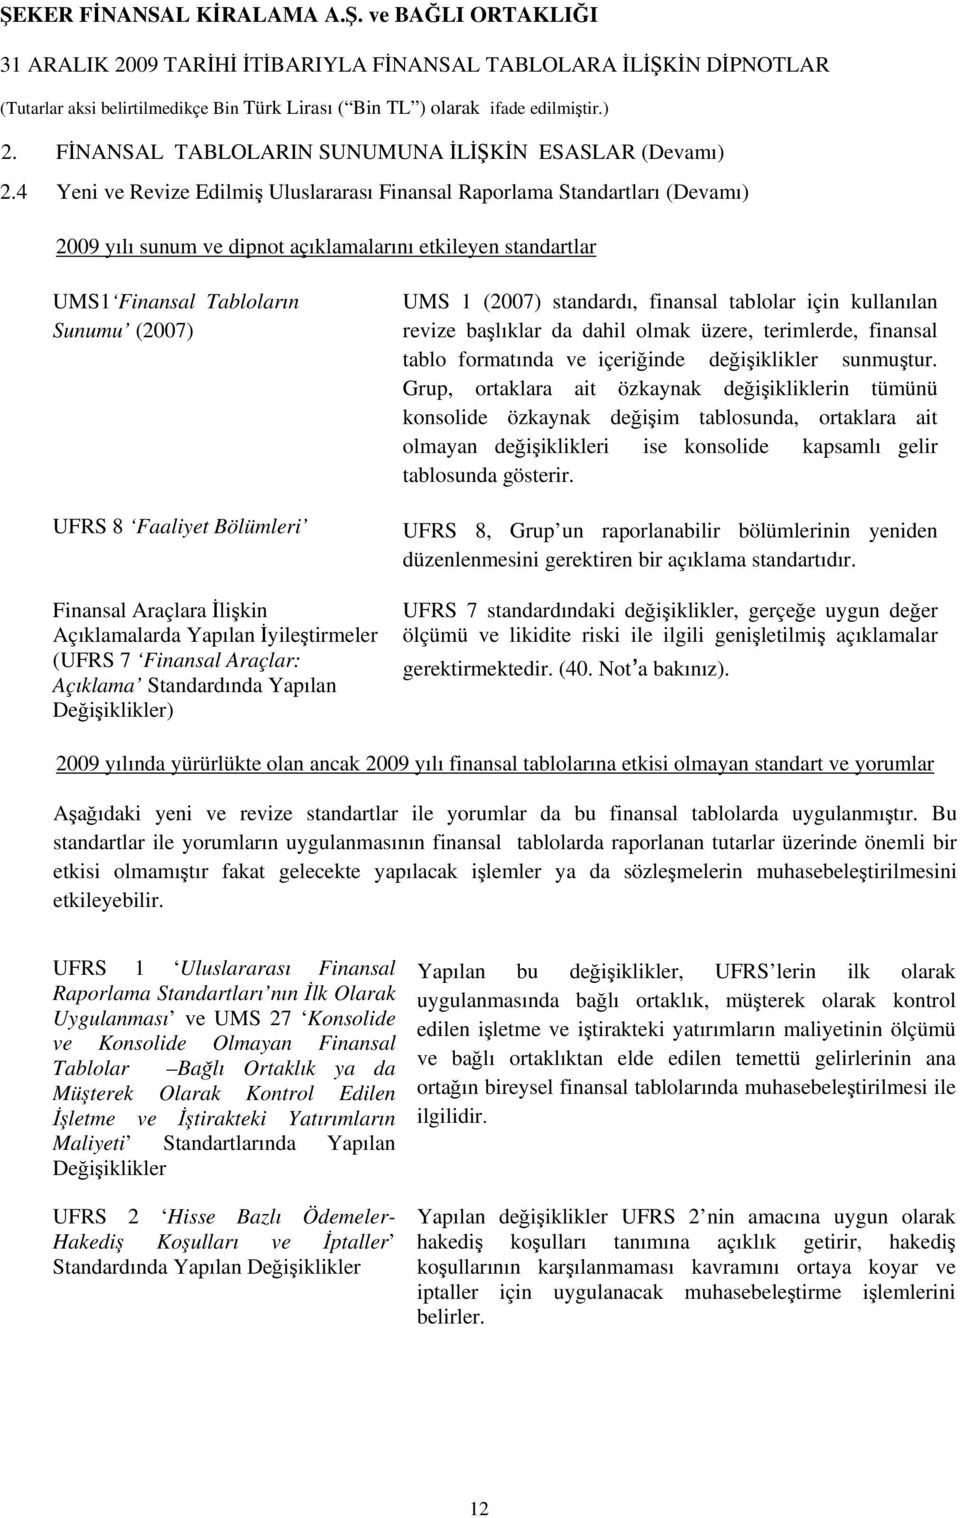 Bölümleri Finansal Araçlara İlişkin Açıklamalarda Yapılan İyileştirmeler (UFRS 7 Finansal Araçlar: Açıklama Standardında Yapılan Değişiklikler) UMS 1 (2007) standardı, finansal tablolar için